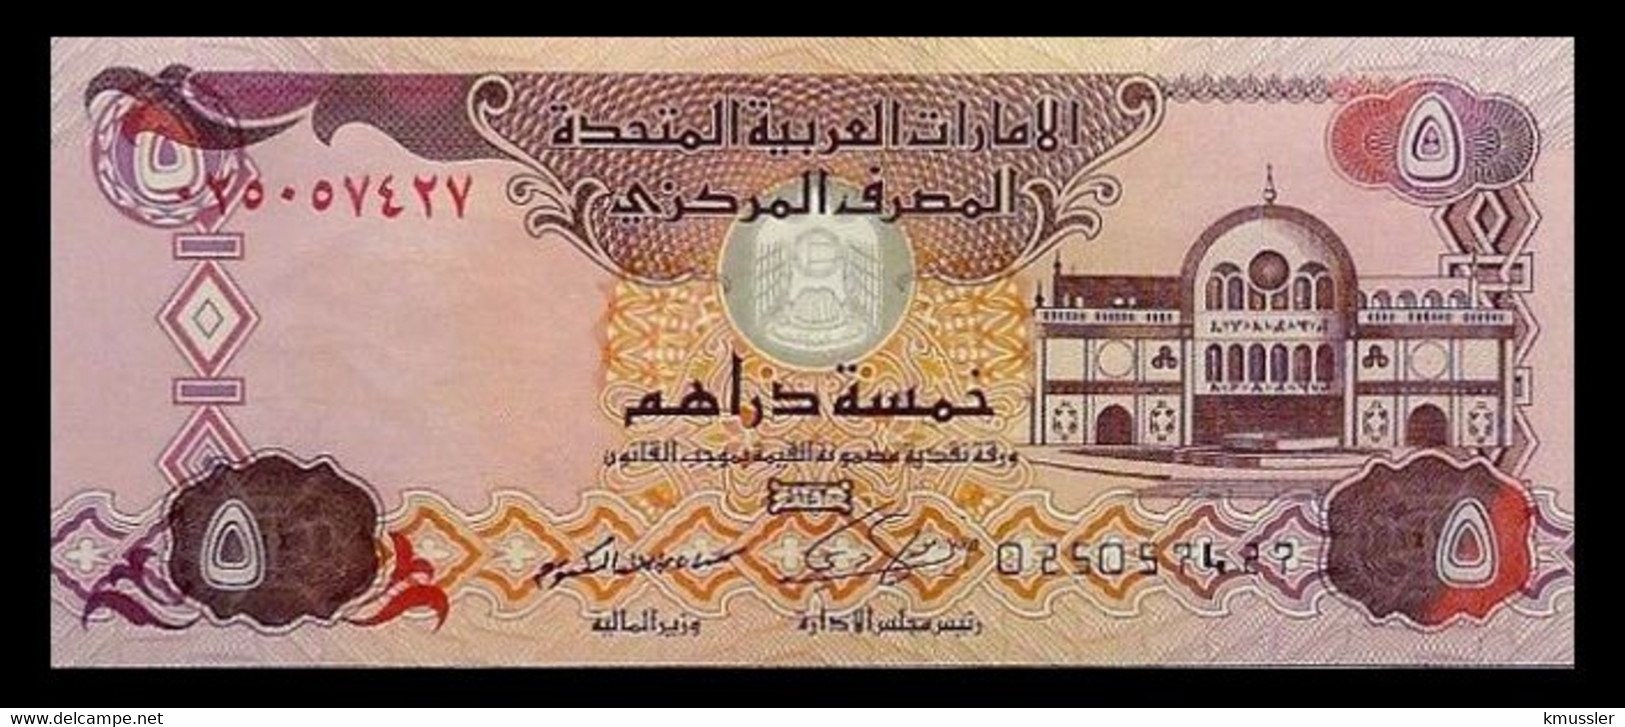 # # # Banknote Aus Den Vereinigten Emiraten (VAE) 5 Dirhams 2014 UNC # # # - Emirats Arabes Unis